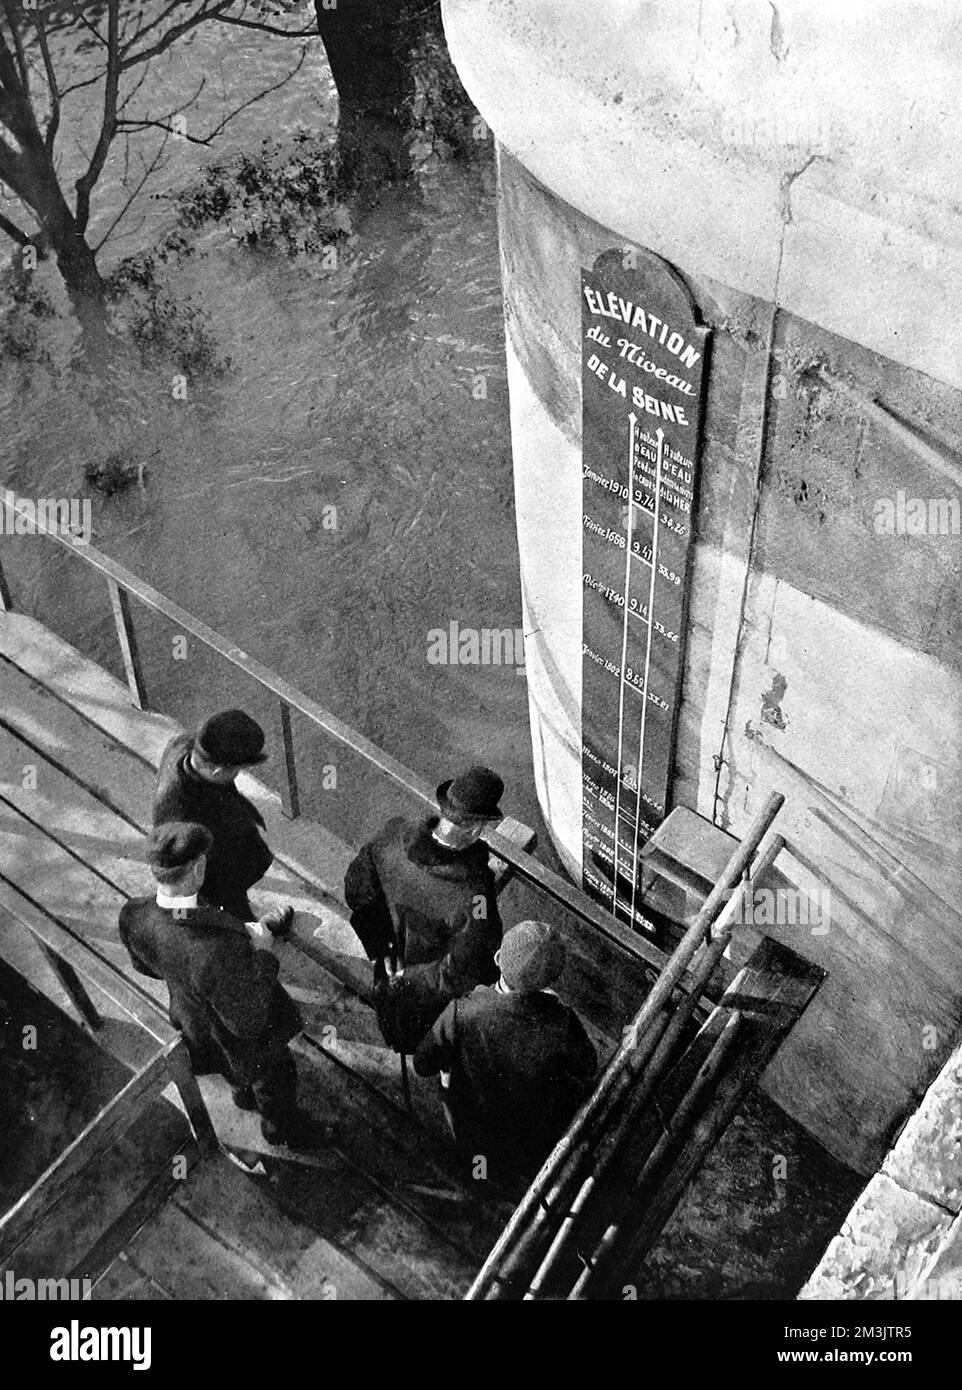 Photographie de l'échelle des crues sur le Pont neuf, montrant les hauteurs des diverses inondations qui ont touché Paris entre les 17th et 20th siècles. La plus forte inondation marquée a été celle de janvier 1910, avec 9,74 mètres d'eau. Date: 1910 Banque D'Images